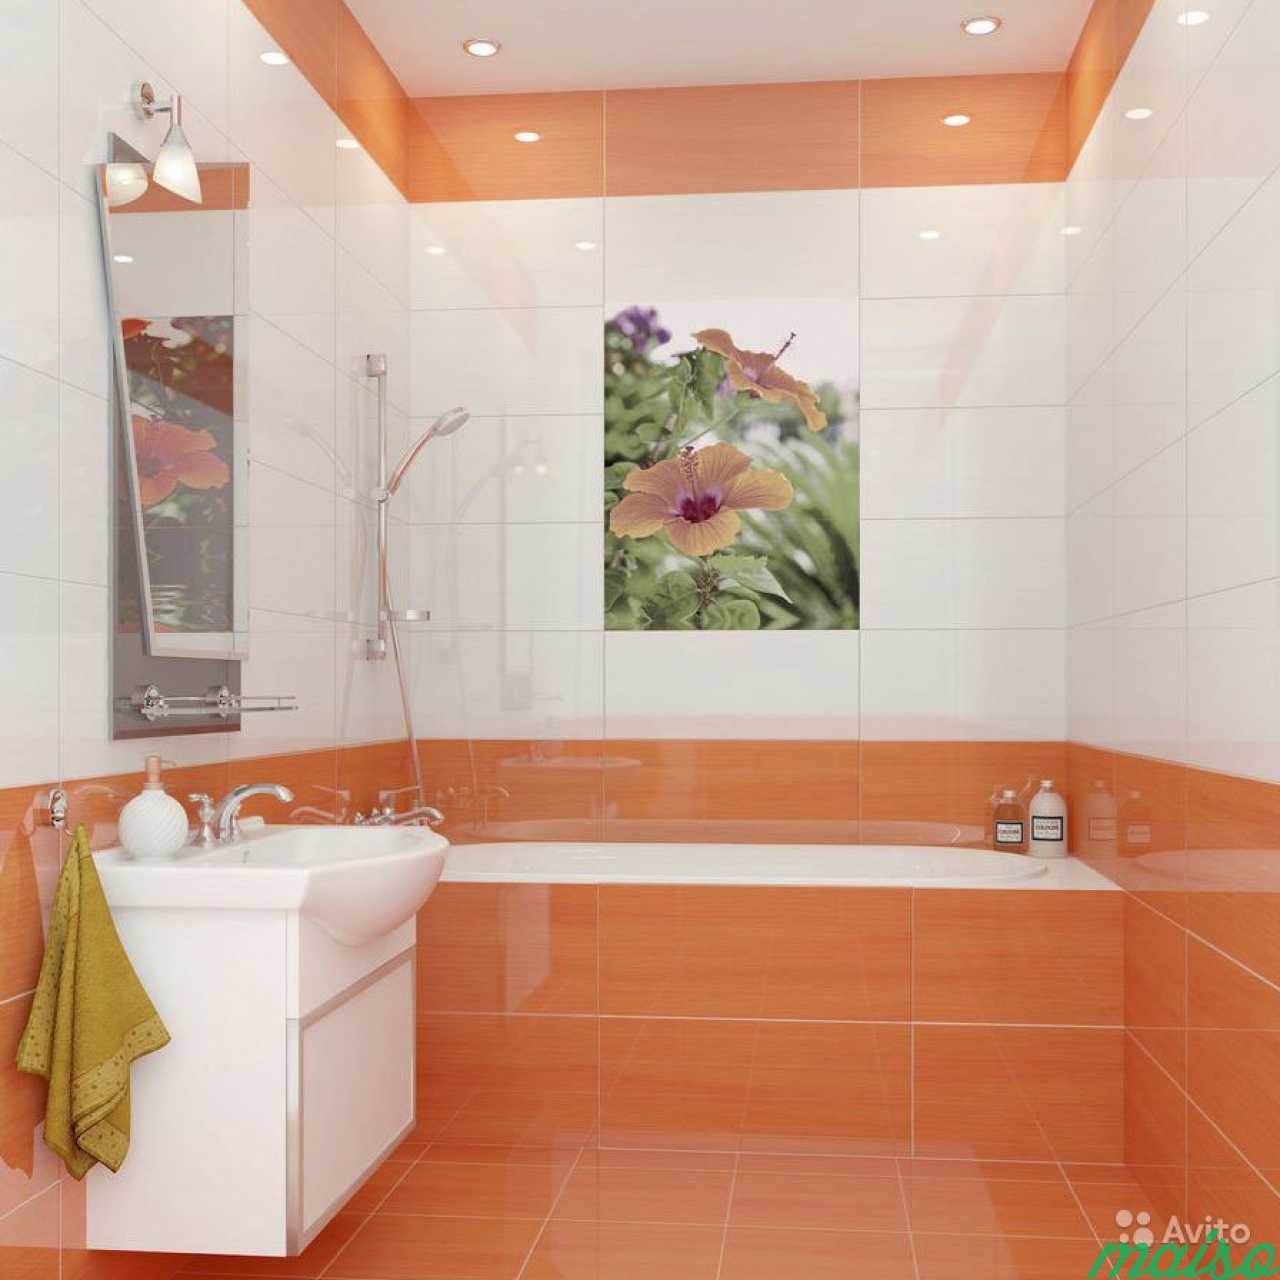 Пример плитки в ванной. Оранжевая плитка для ванной. Плитка в ванную комнату оранжевая. Ванная комната в оранжевых тонах. Керамическая плитка для небольшой ванной комнаты.